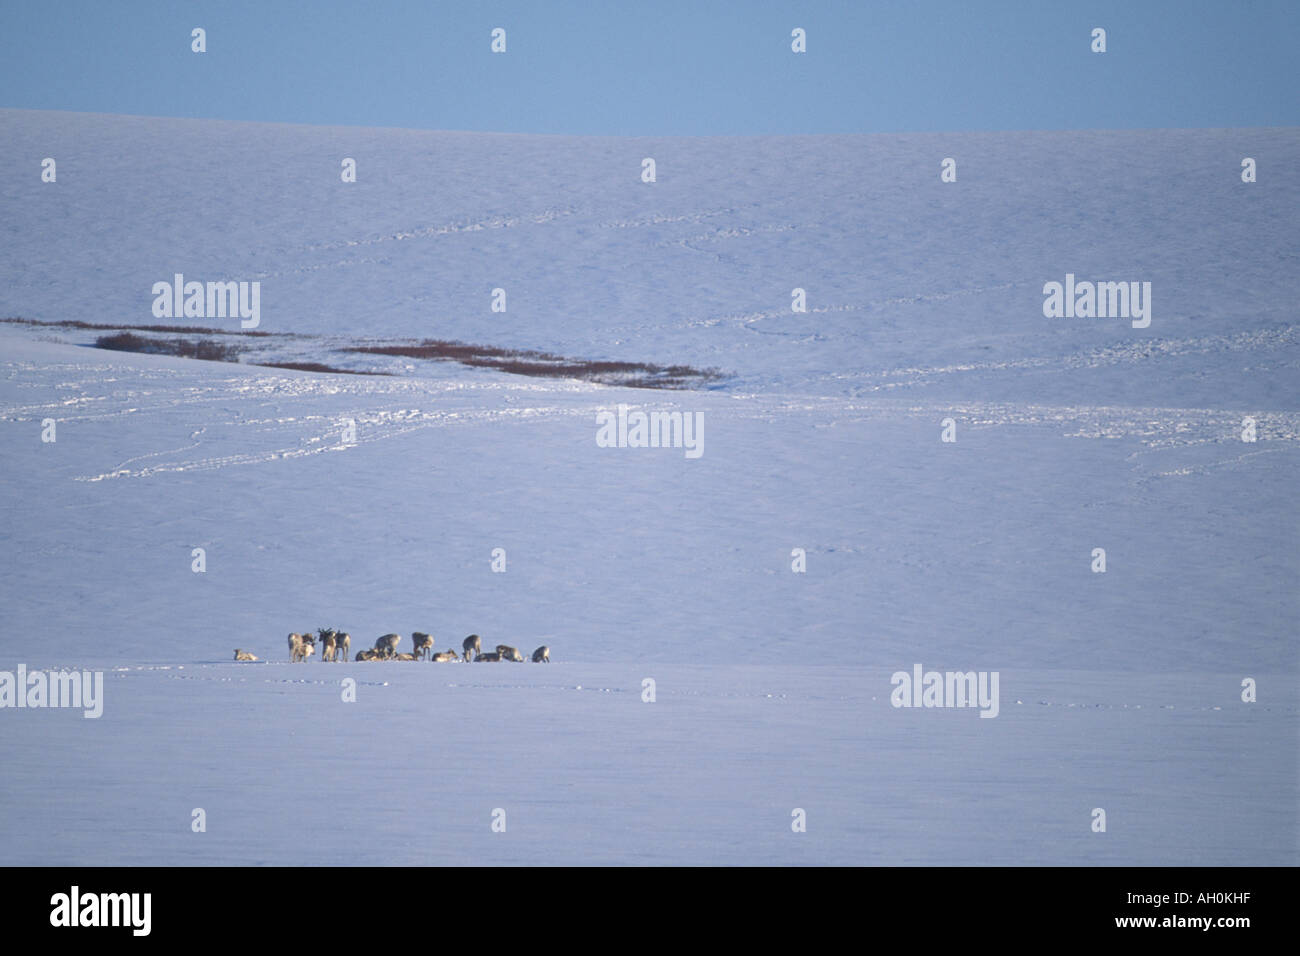 Le caribou de la toundra Rangifer tarandus troupeau au large de la route dans l'Arctique de l'Alaska North Slope Banque D'Images